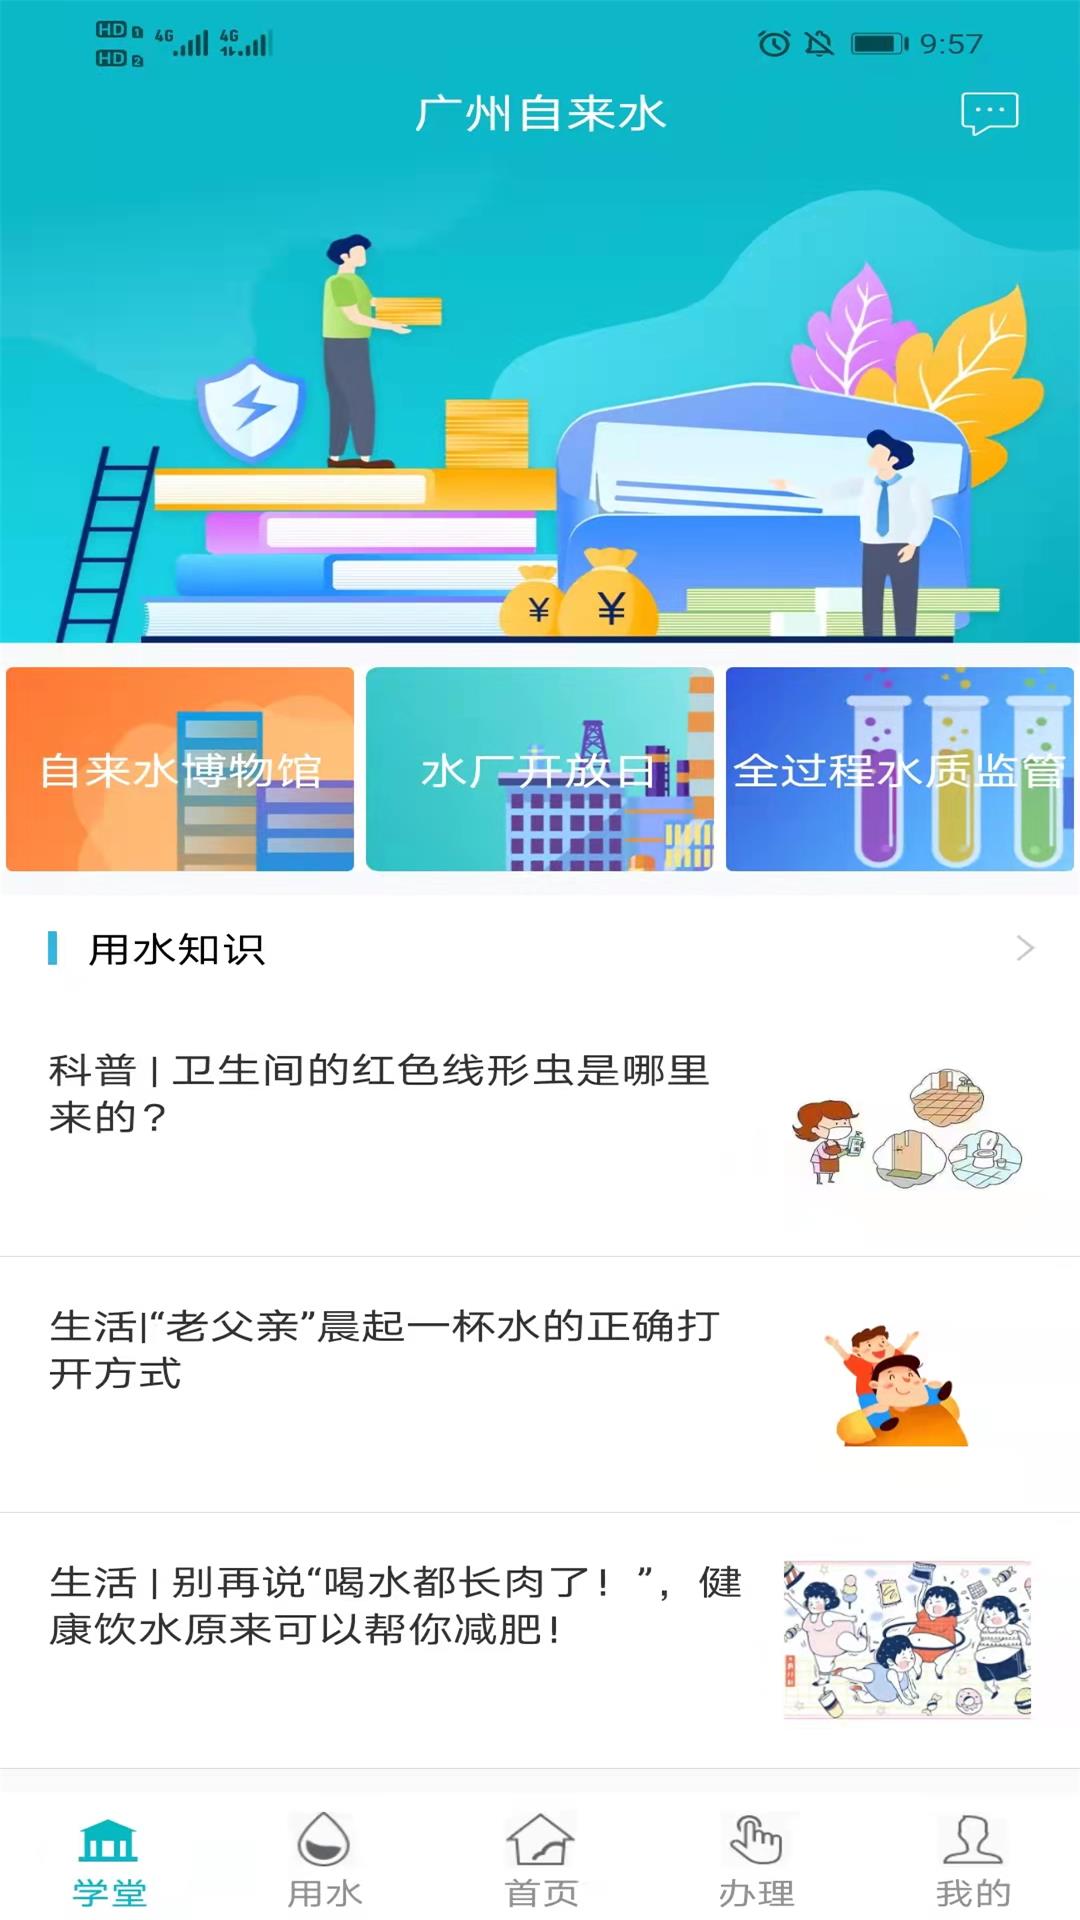 广州自来水 v1.0.18-可在线办理水费查询、缴费等业务。截图1